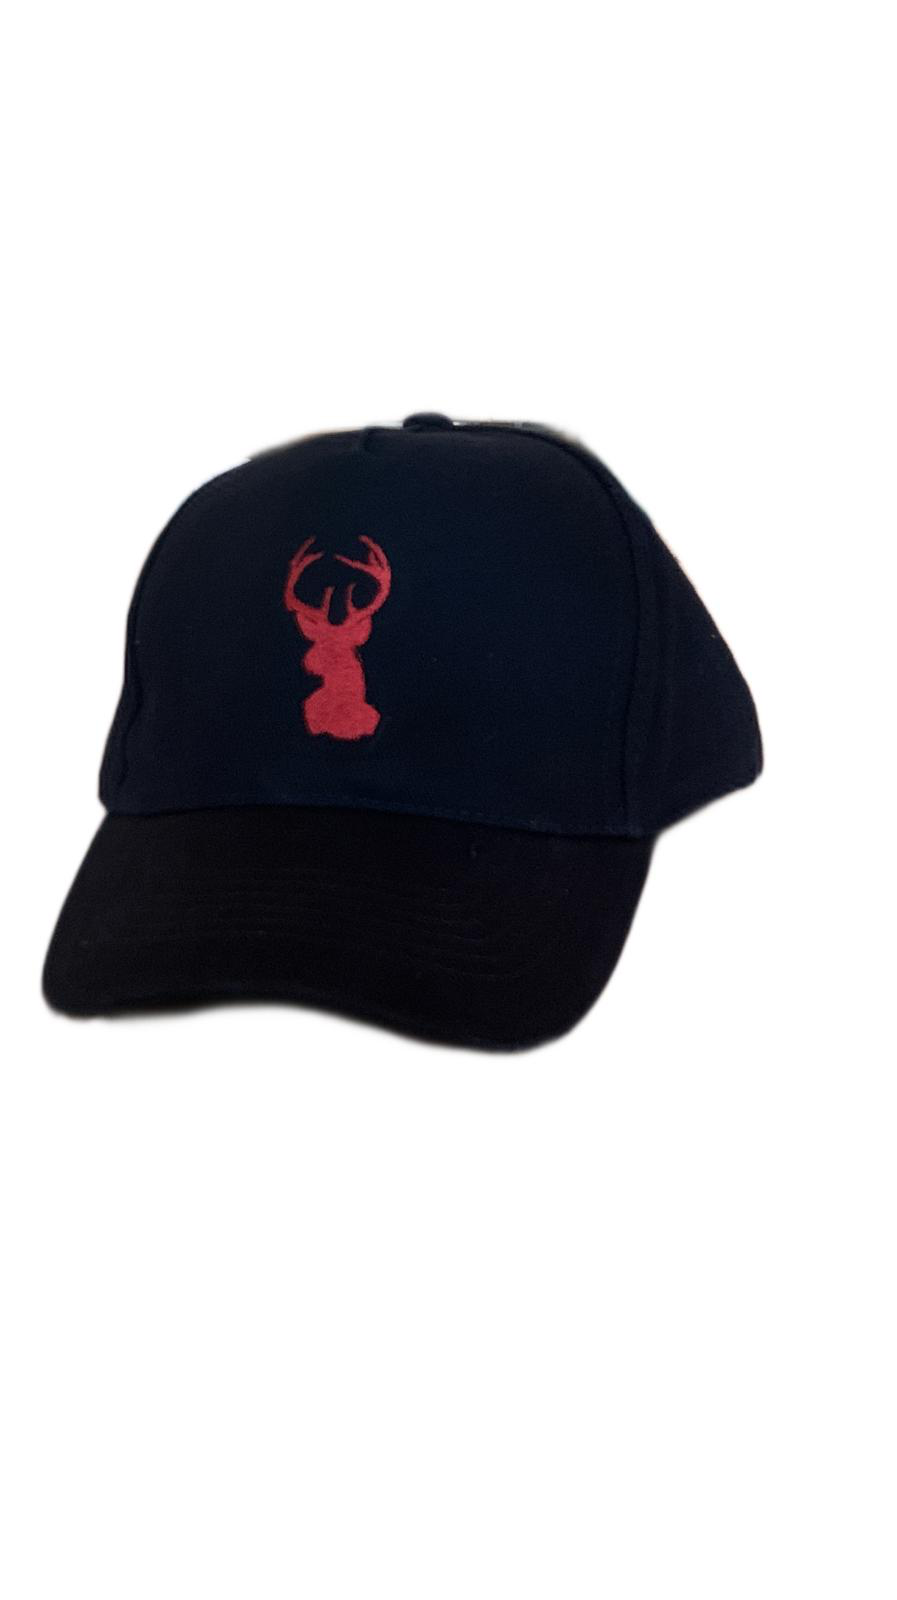 roter hirsch - Cap / Schirmmütze in schwarz mit Logo